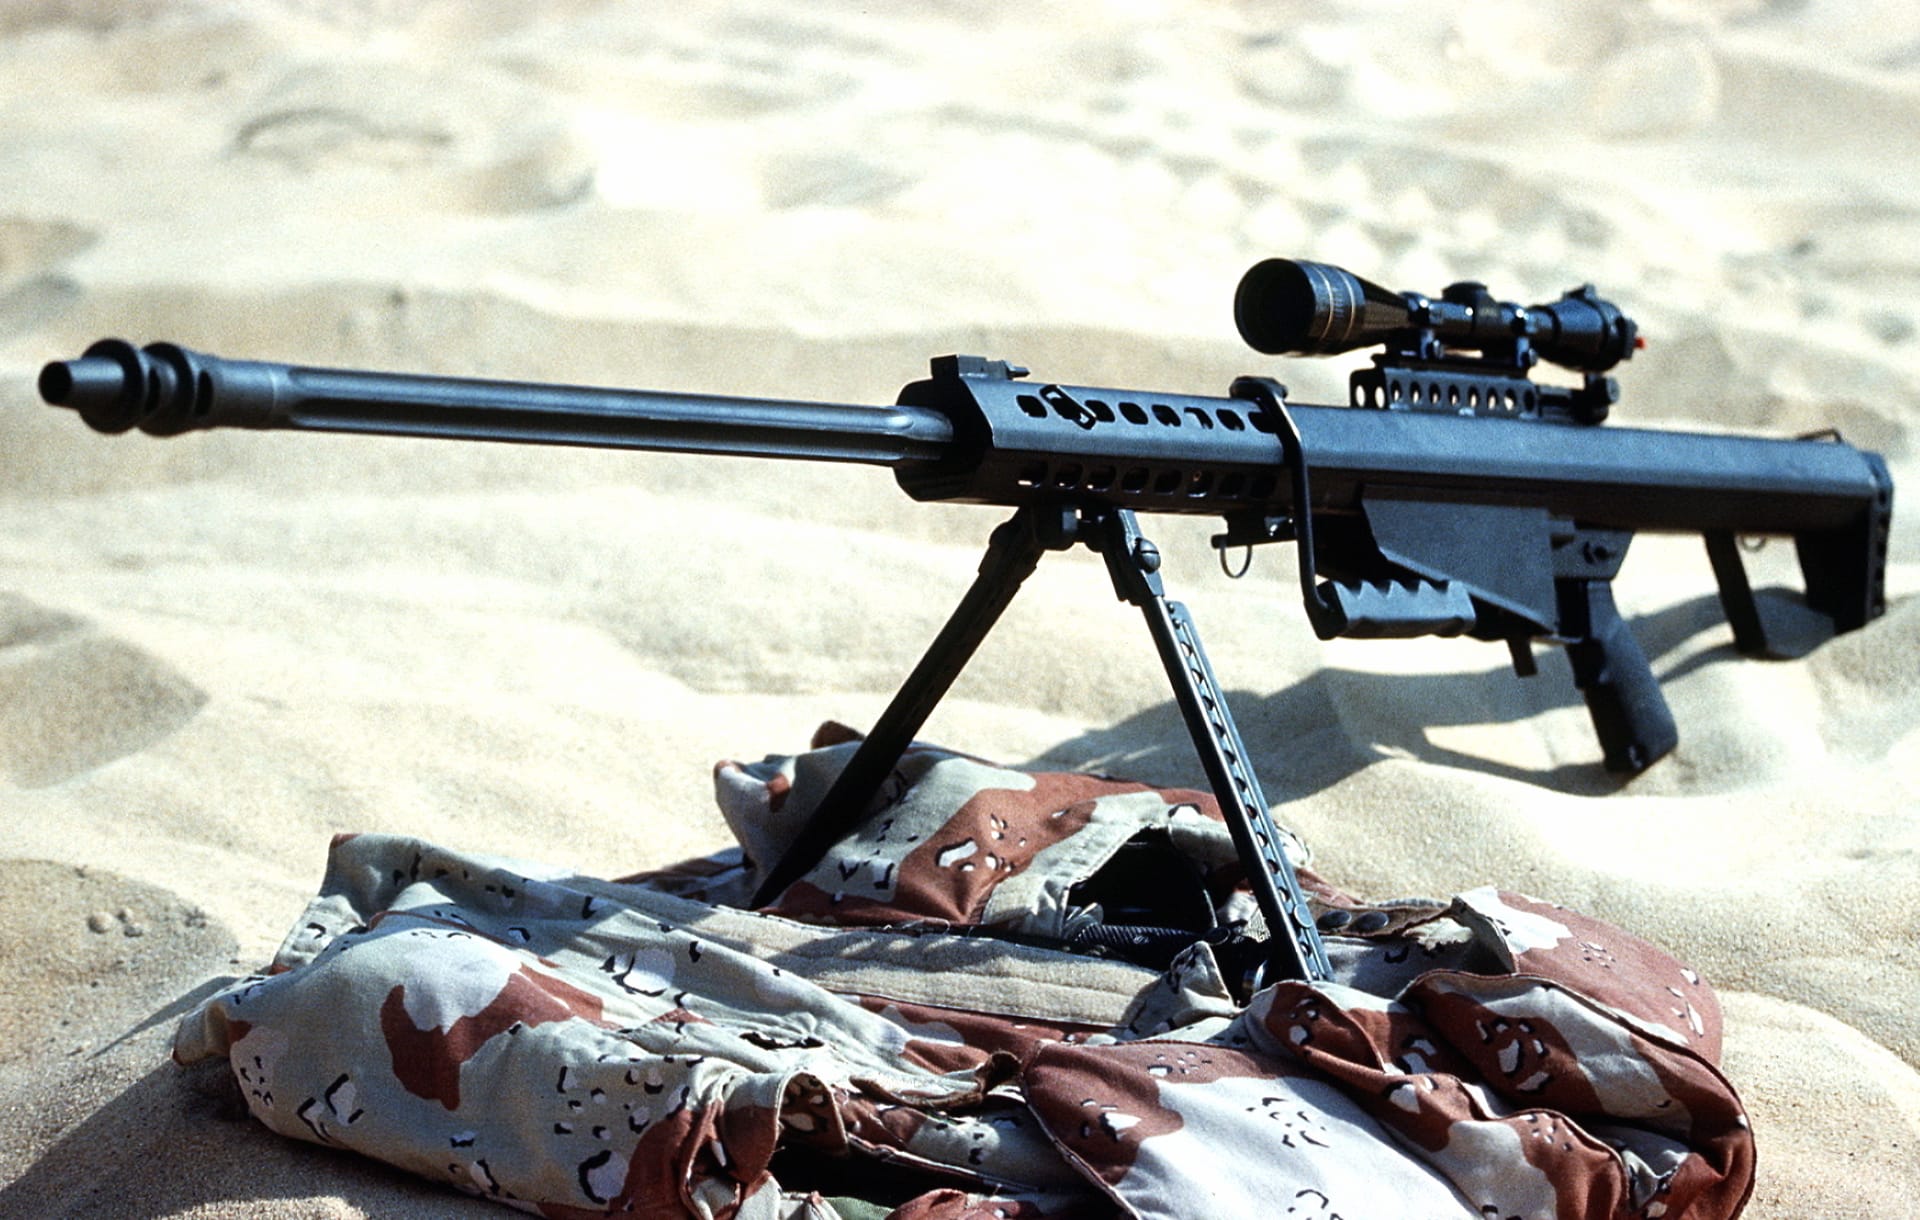 Barrett M82 Sniper Rifle at 1600 x 1200 size wallpapers HD quality